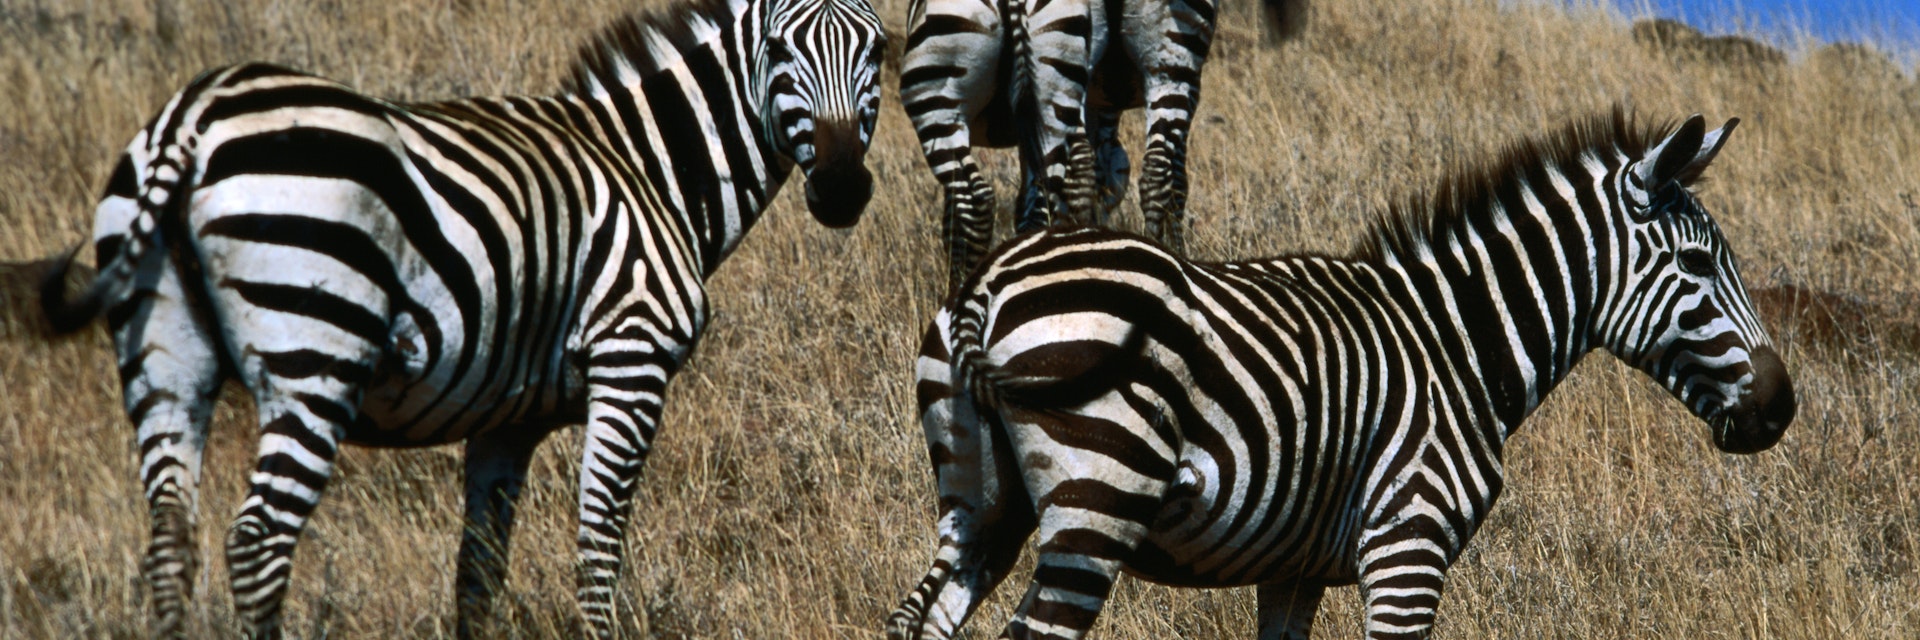 Plains zebra (Equus burchellii), Nechisar National Park.